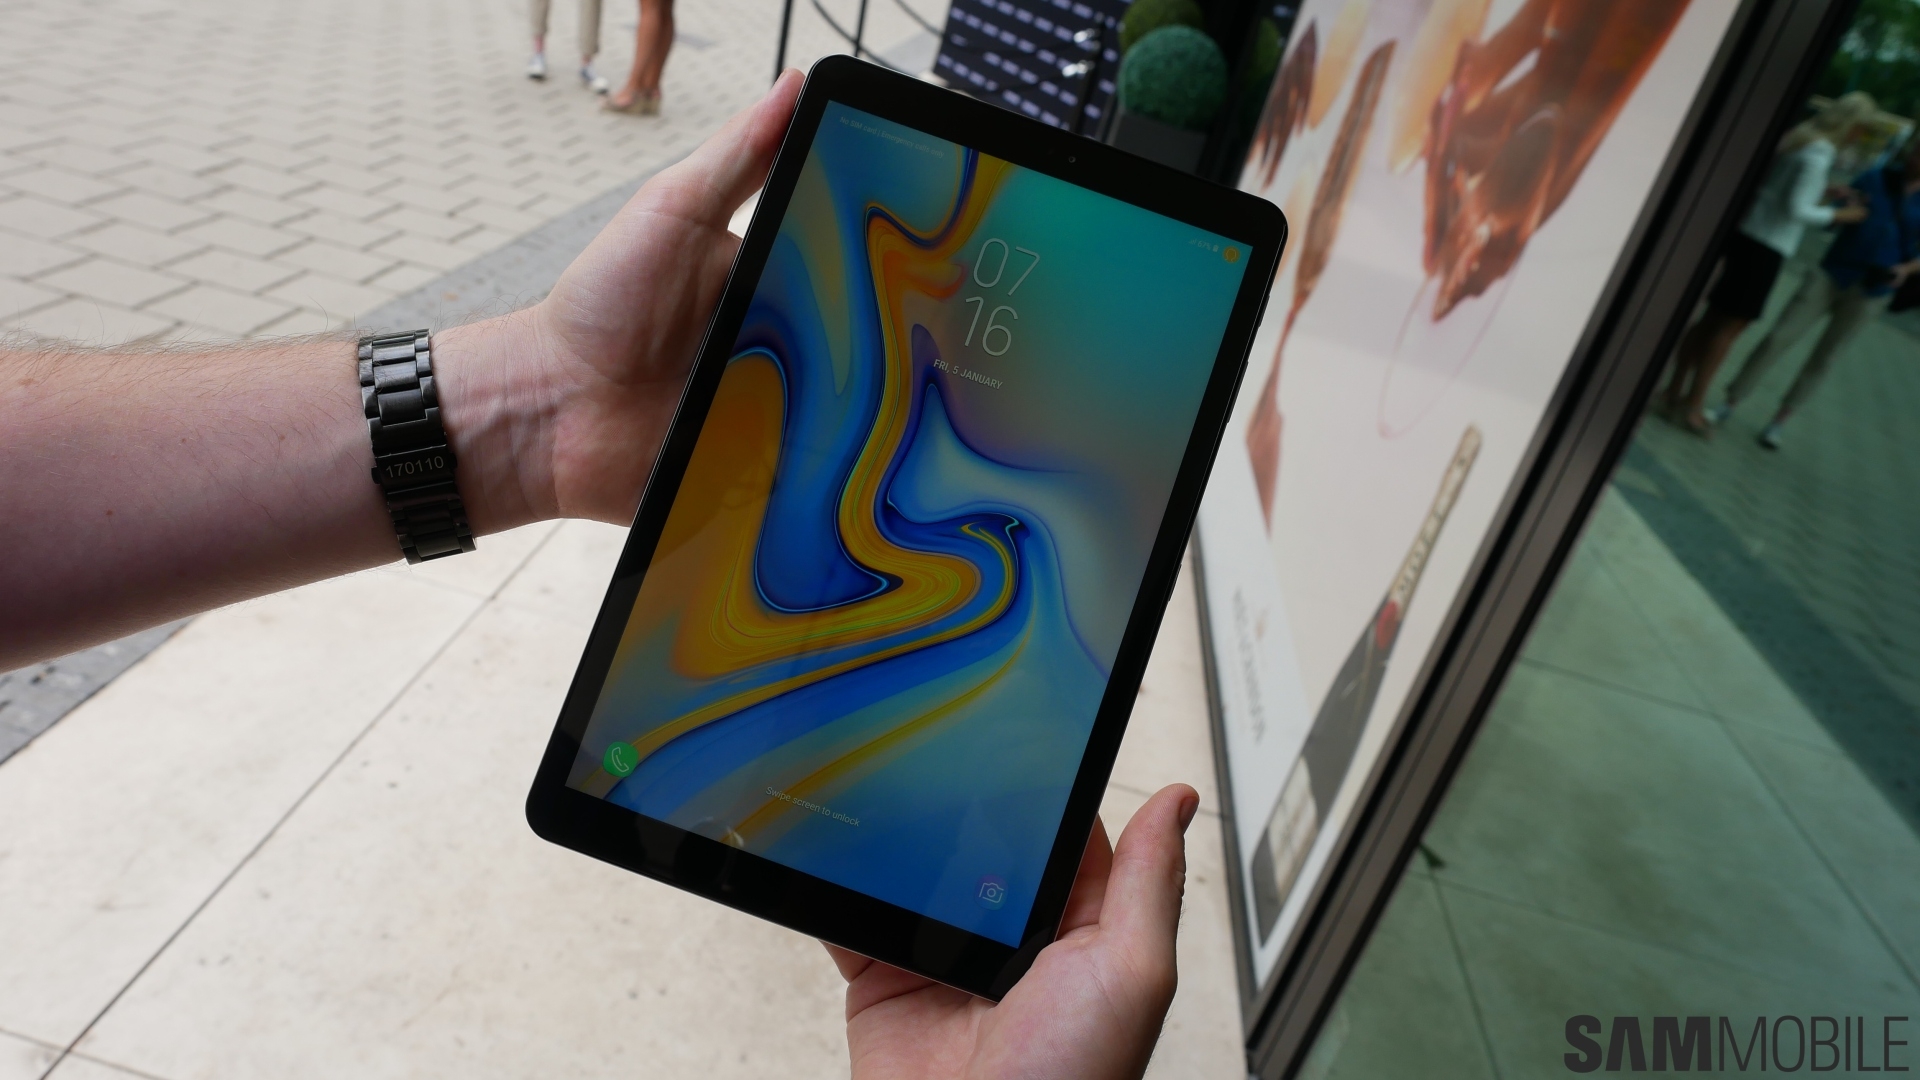 Samsung Galaxy Tab A 10.5 hands-on impressions - SamMobile